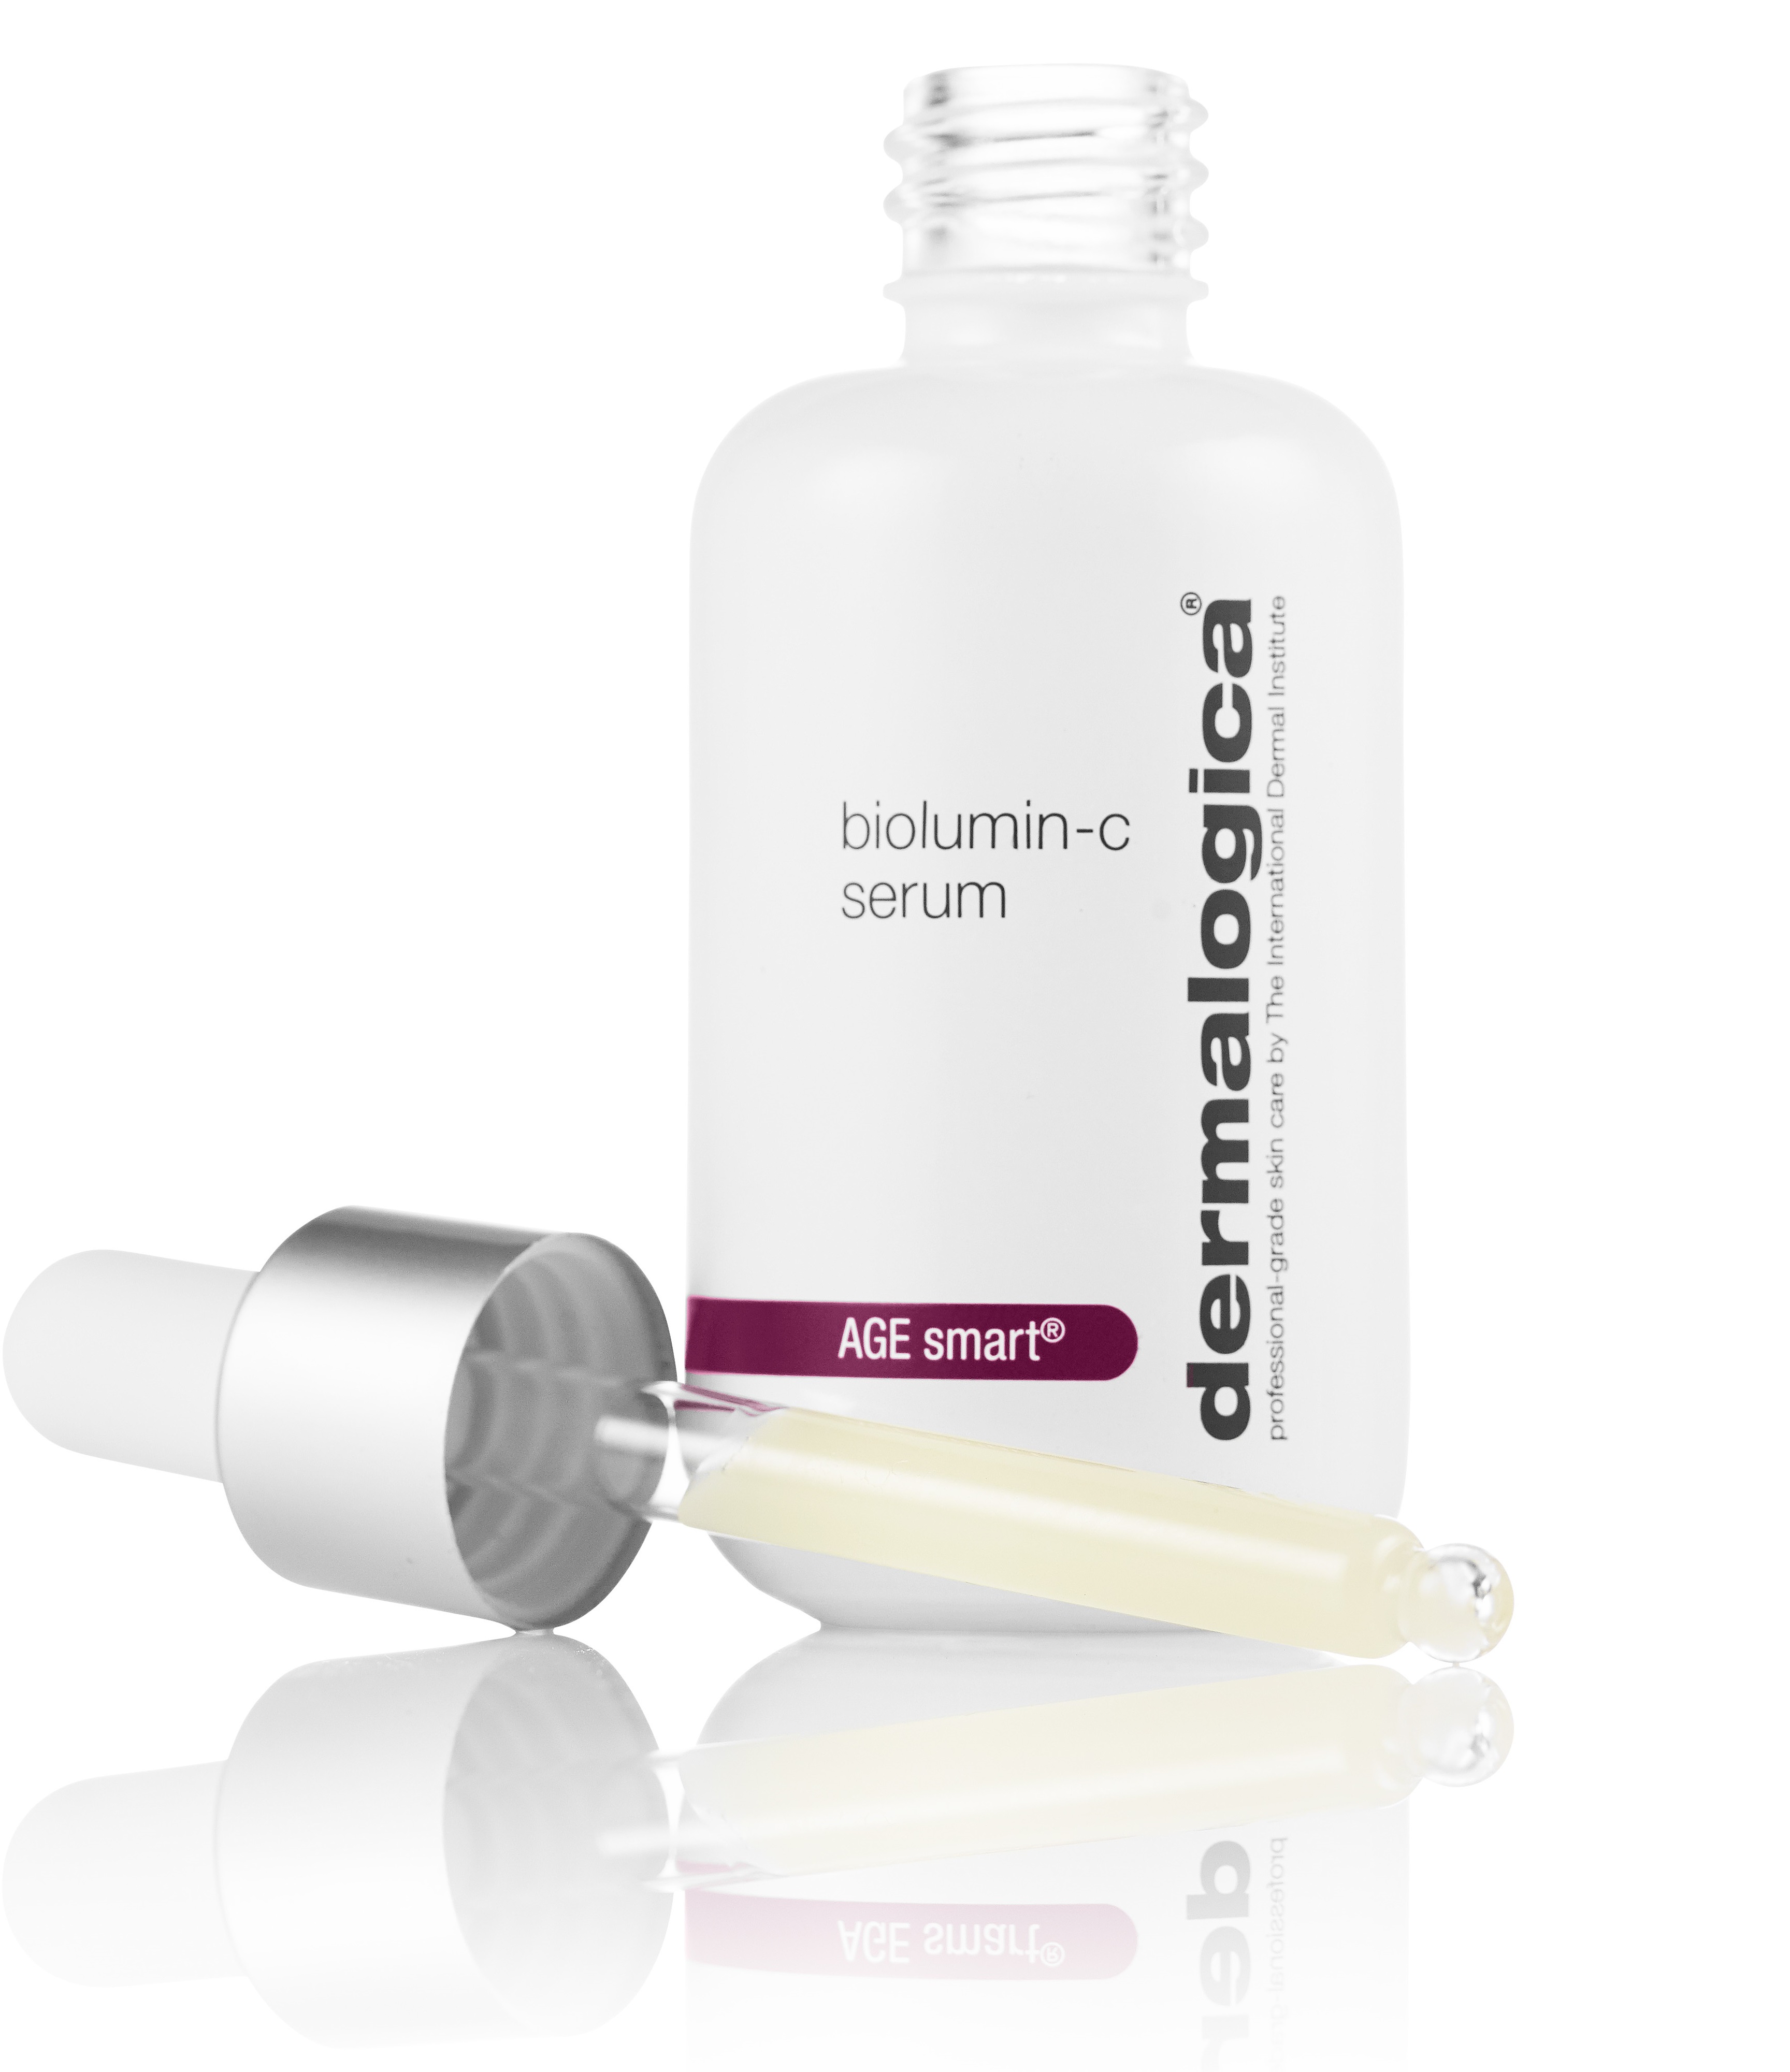 New! Biolumin-C serum brighter skin from within